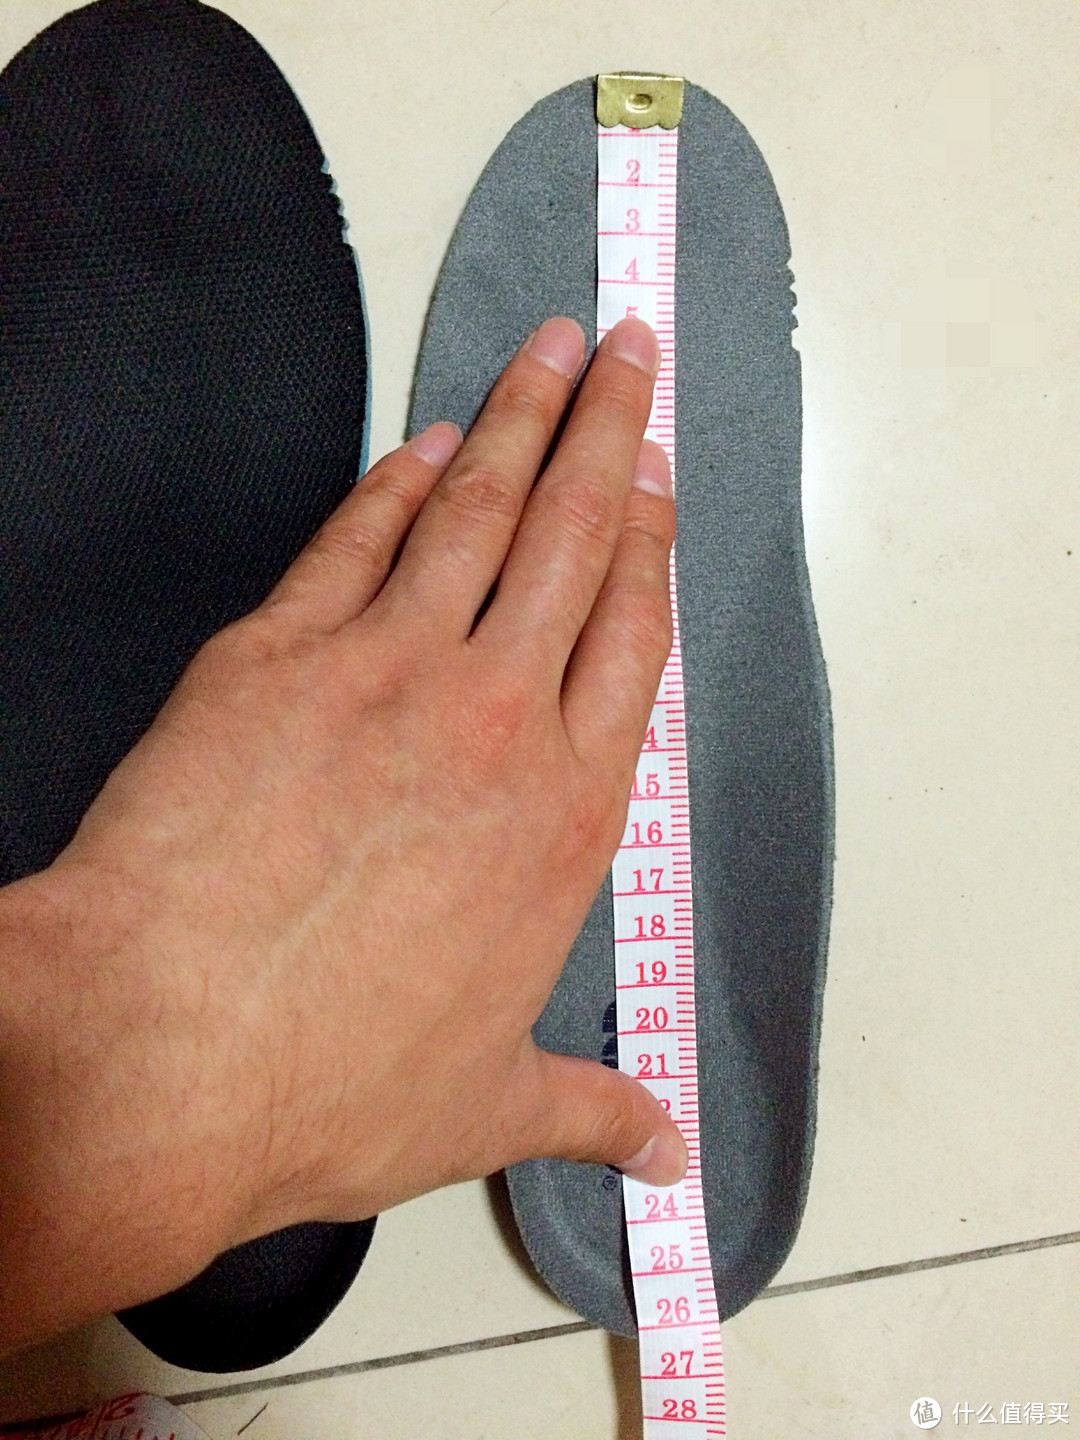 Asics 亚瑟士 Gel-Lyte V 跑鞋尺码选择心得（与K20对比）